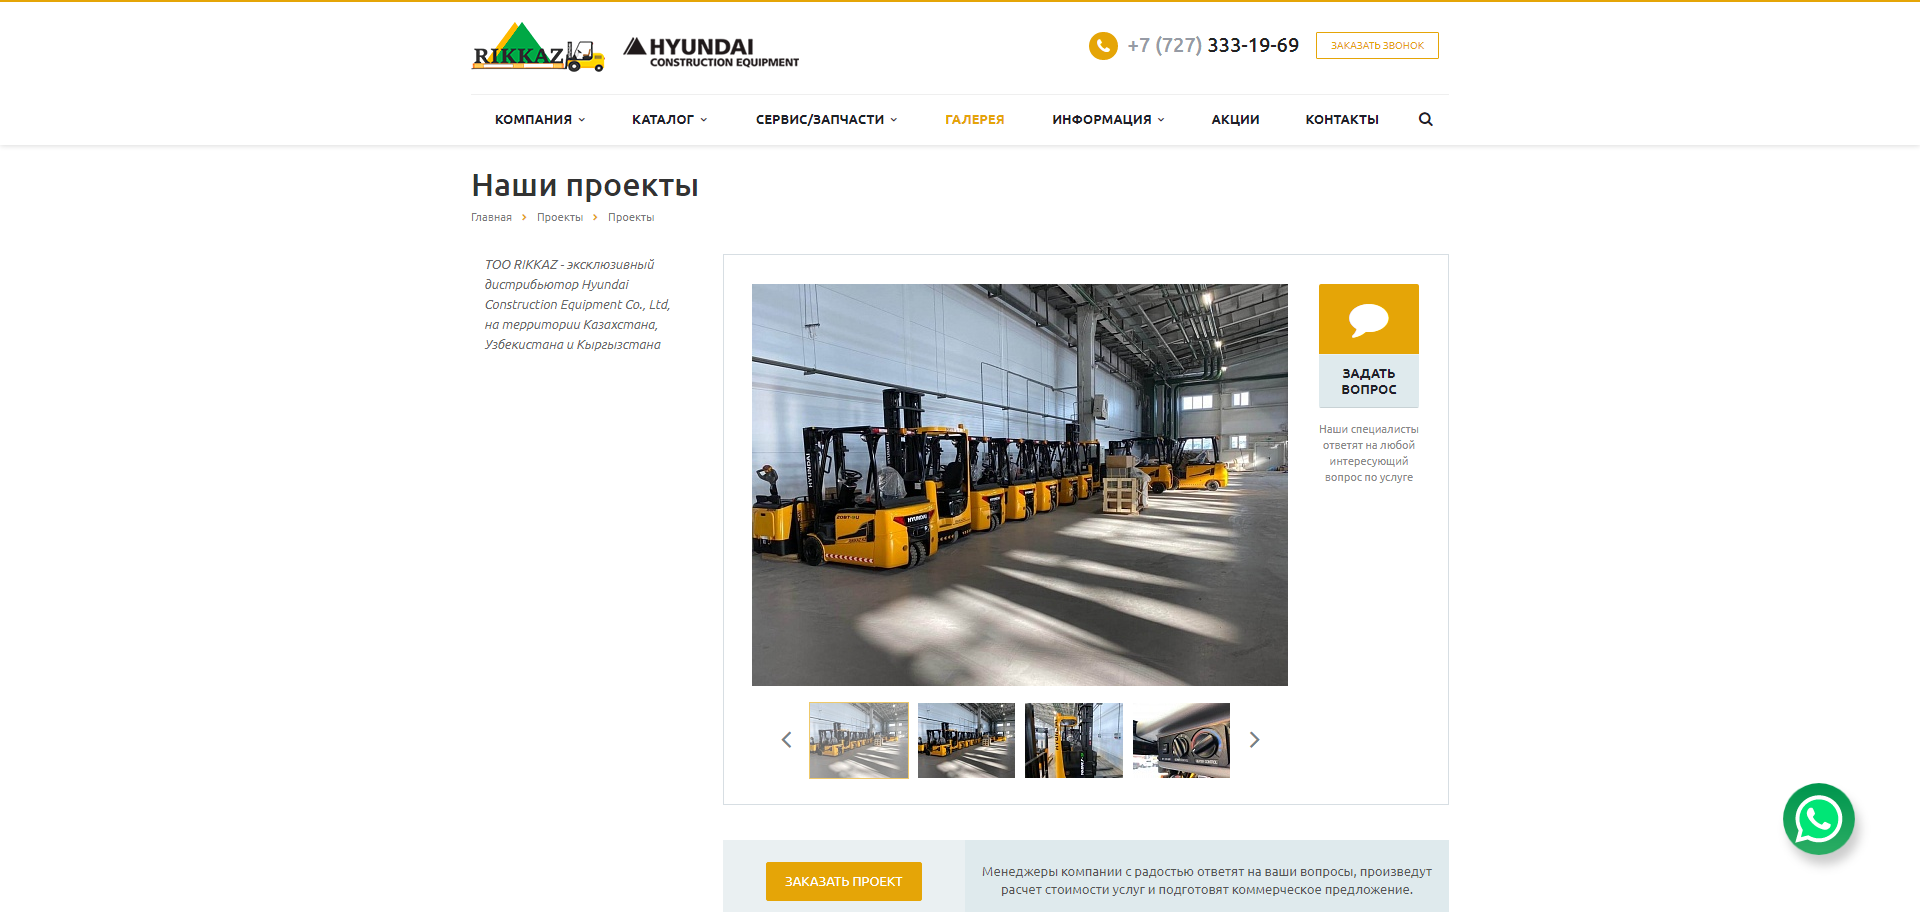 сайт каталог для эксклизивного дистрибьютора компании hyundai construction equipment co., ltd в средней азии